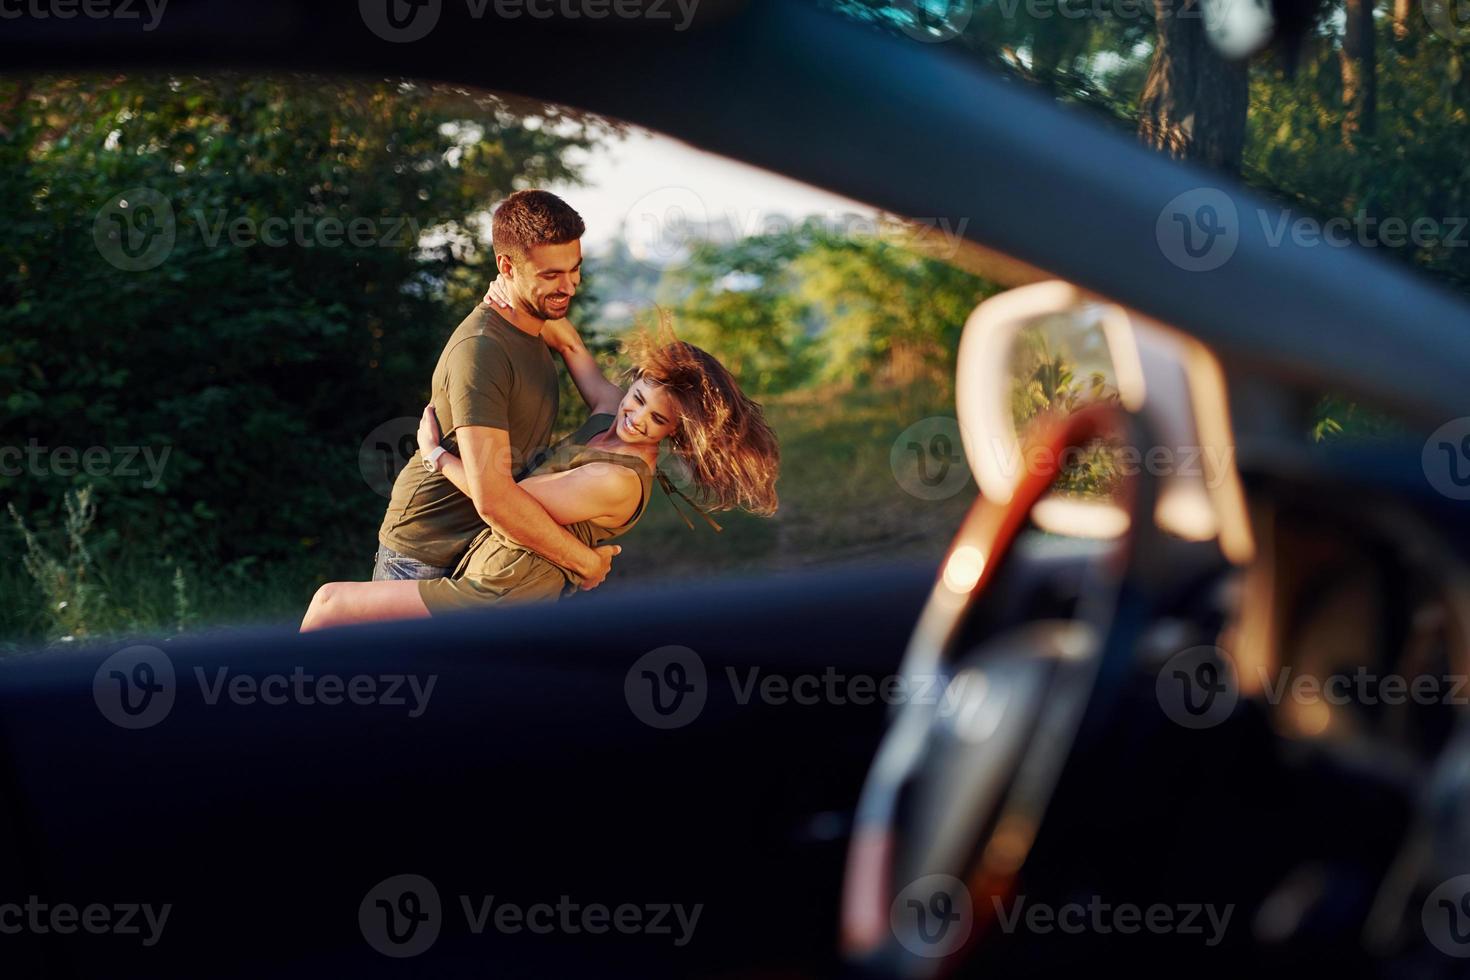 vista pela janela do carro. lindo casal jovem se diverte na floresta durante o dia foto